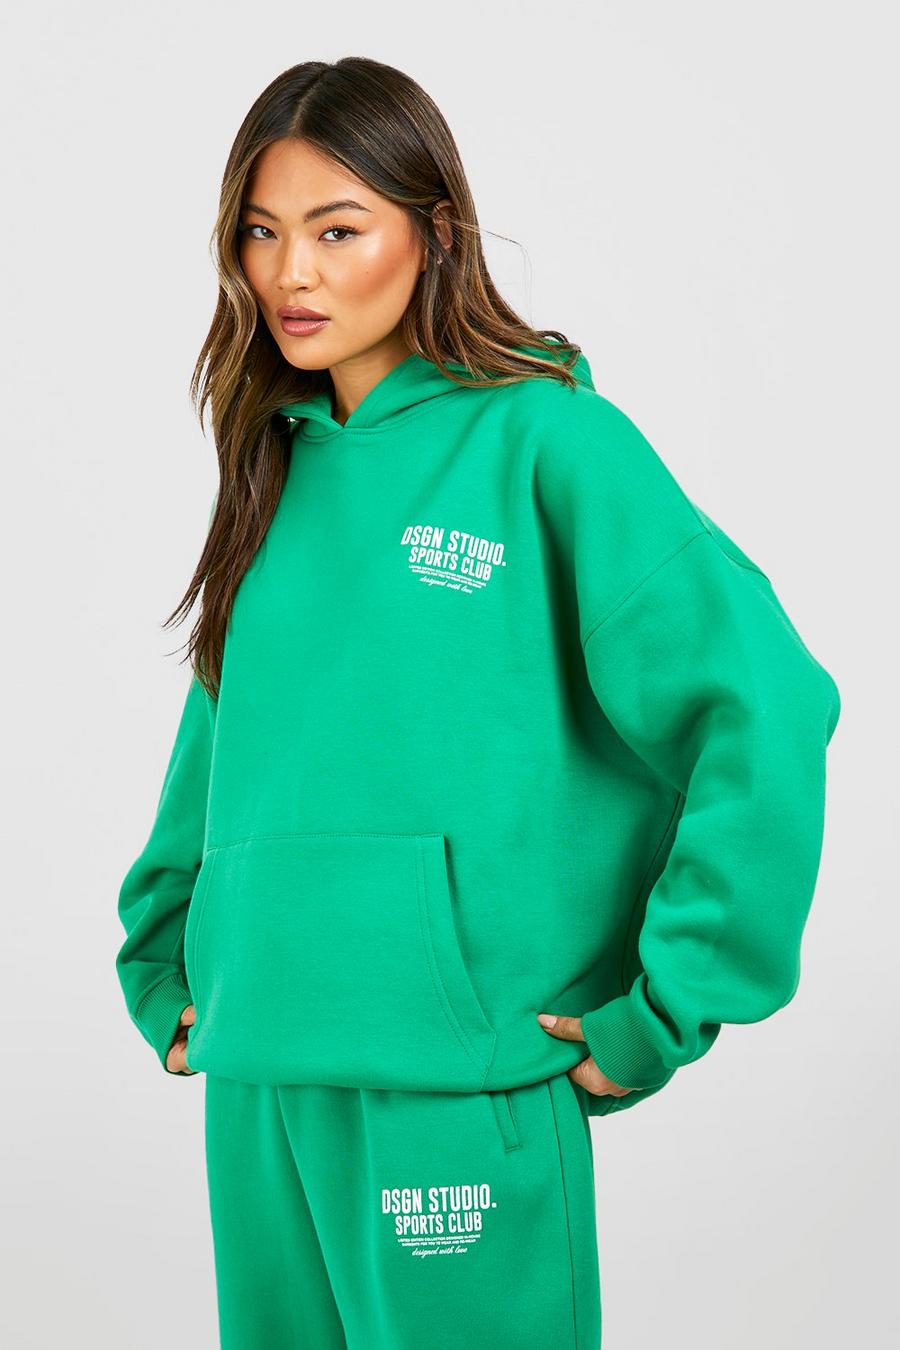 Green Dsgn Studio Sports Club Oversize hoodie